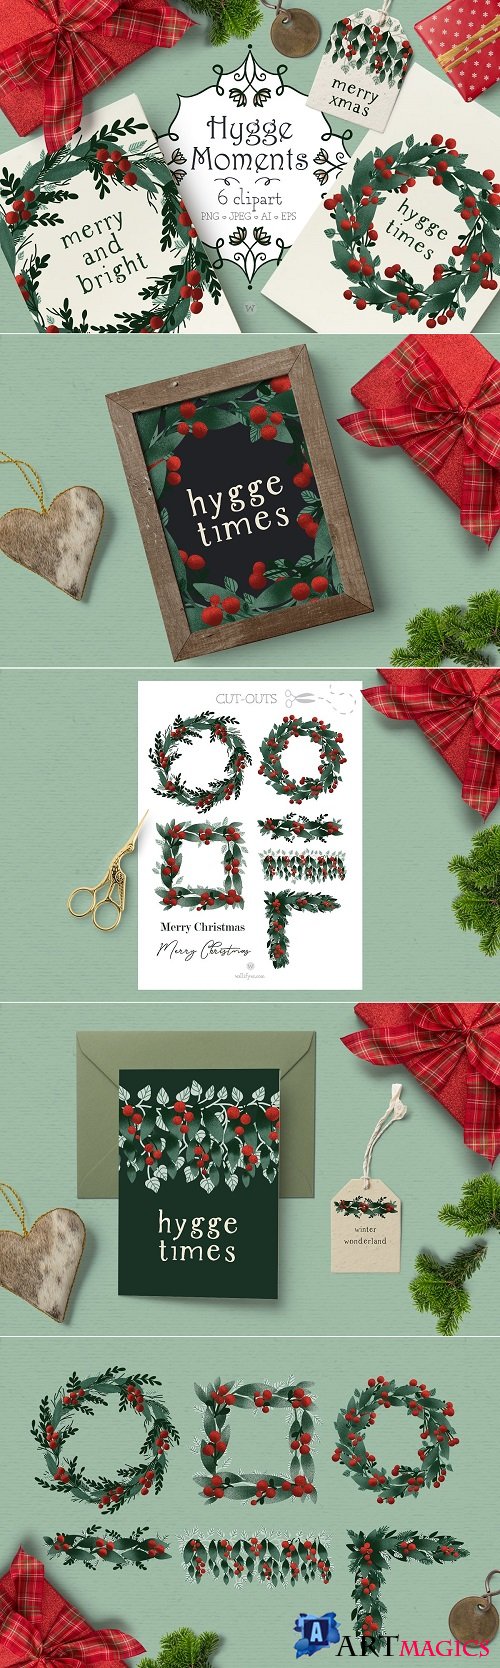 Christmas wreath clipart - 4278220